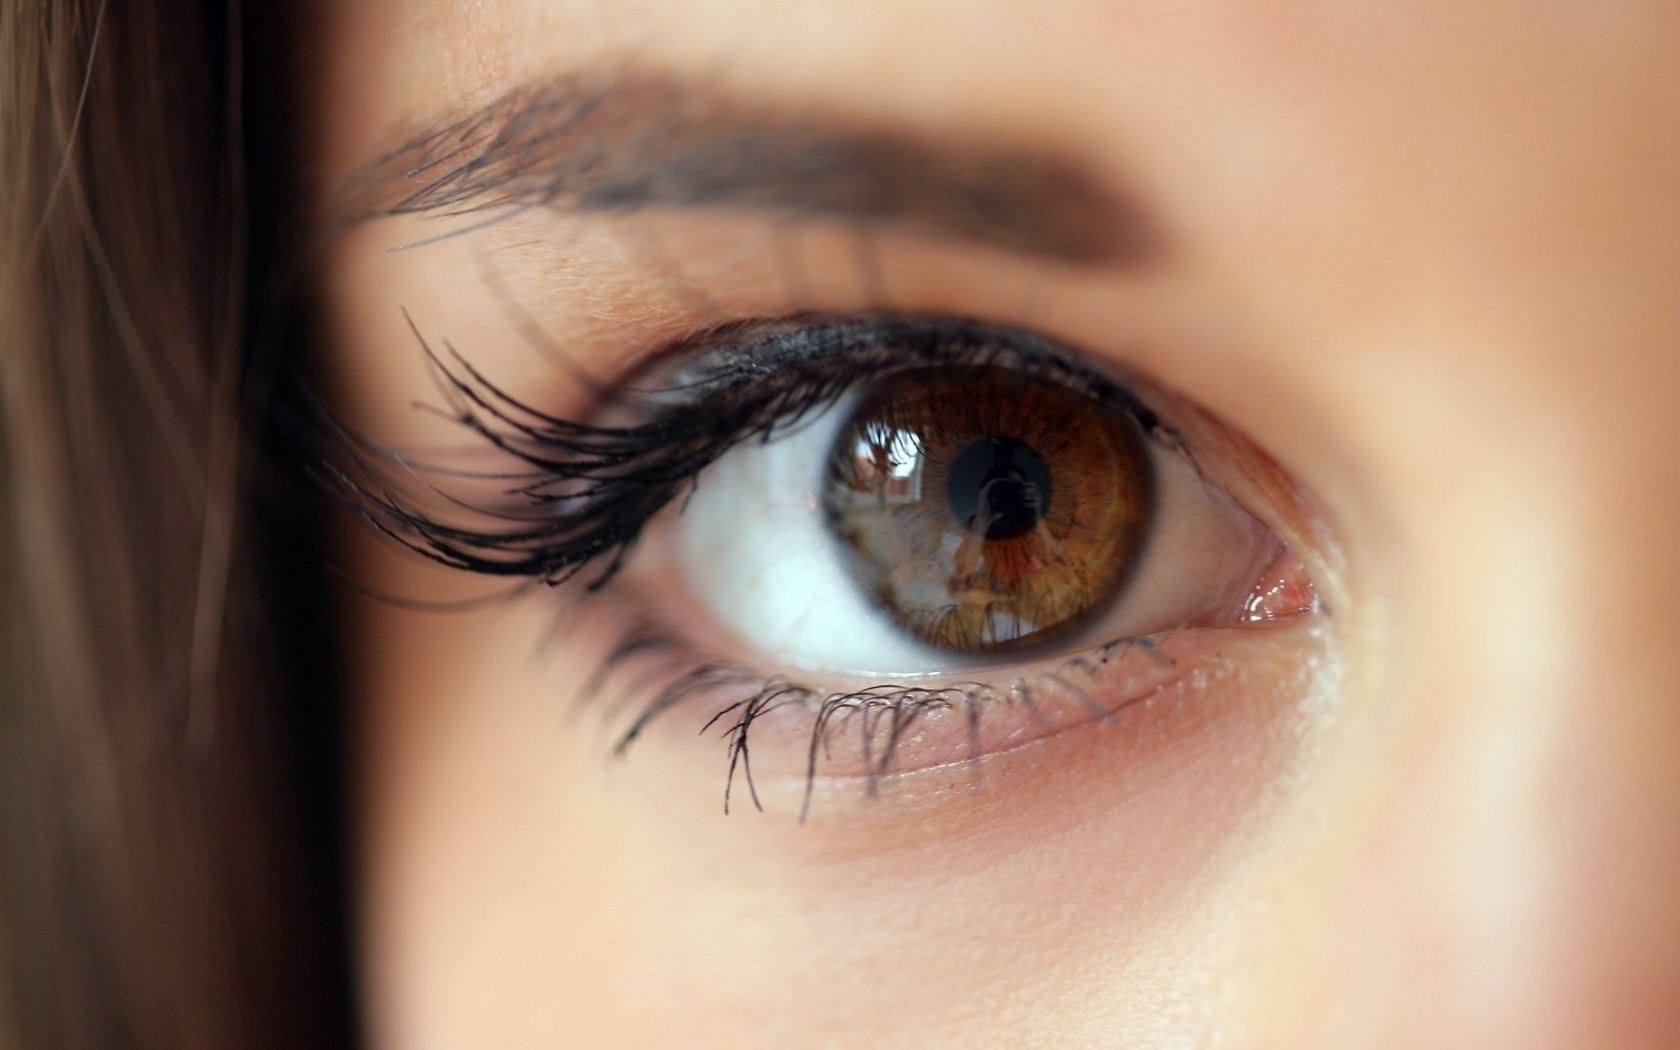 أهم الإشارات والدلالات للغة العيون في علم النفس